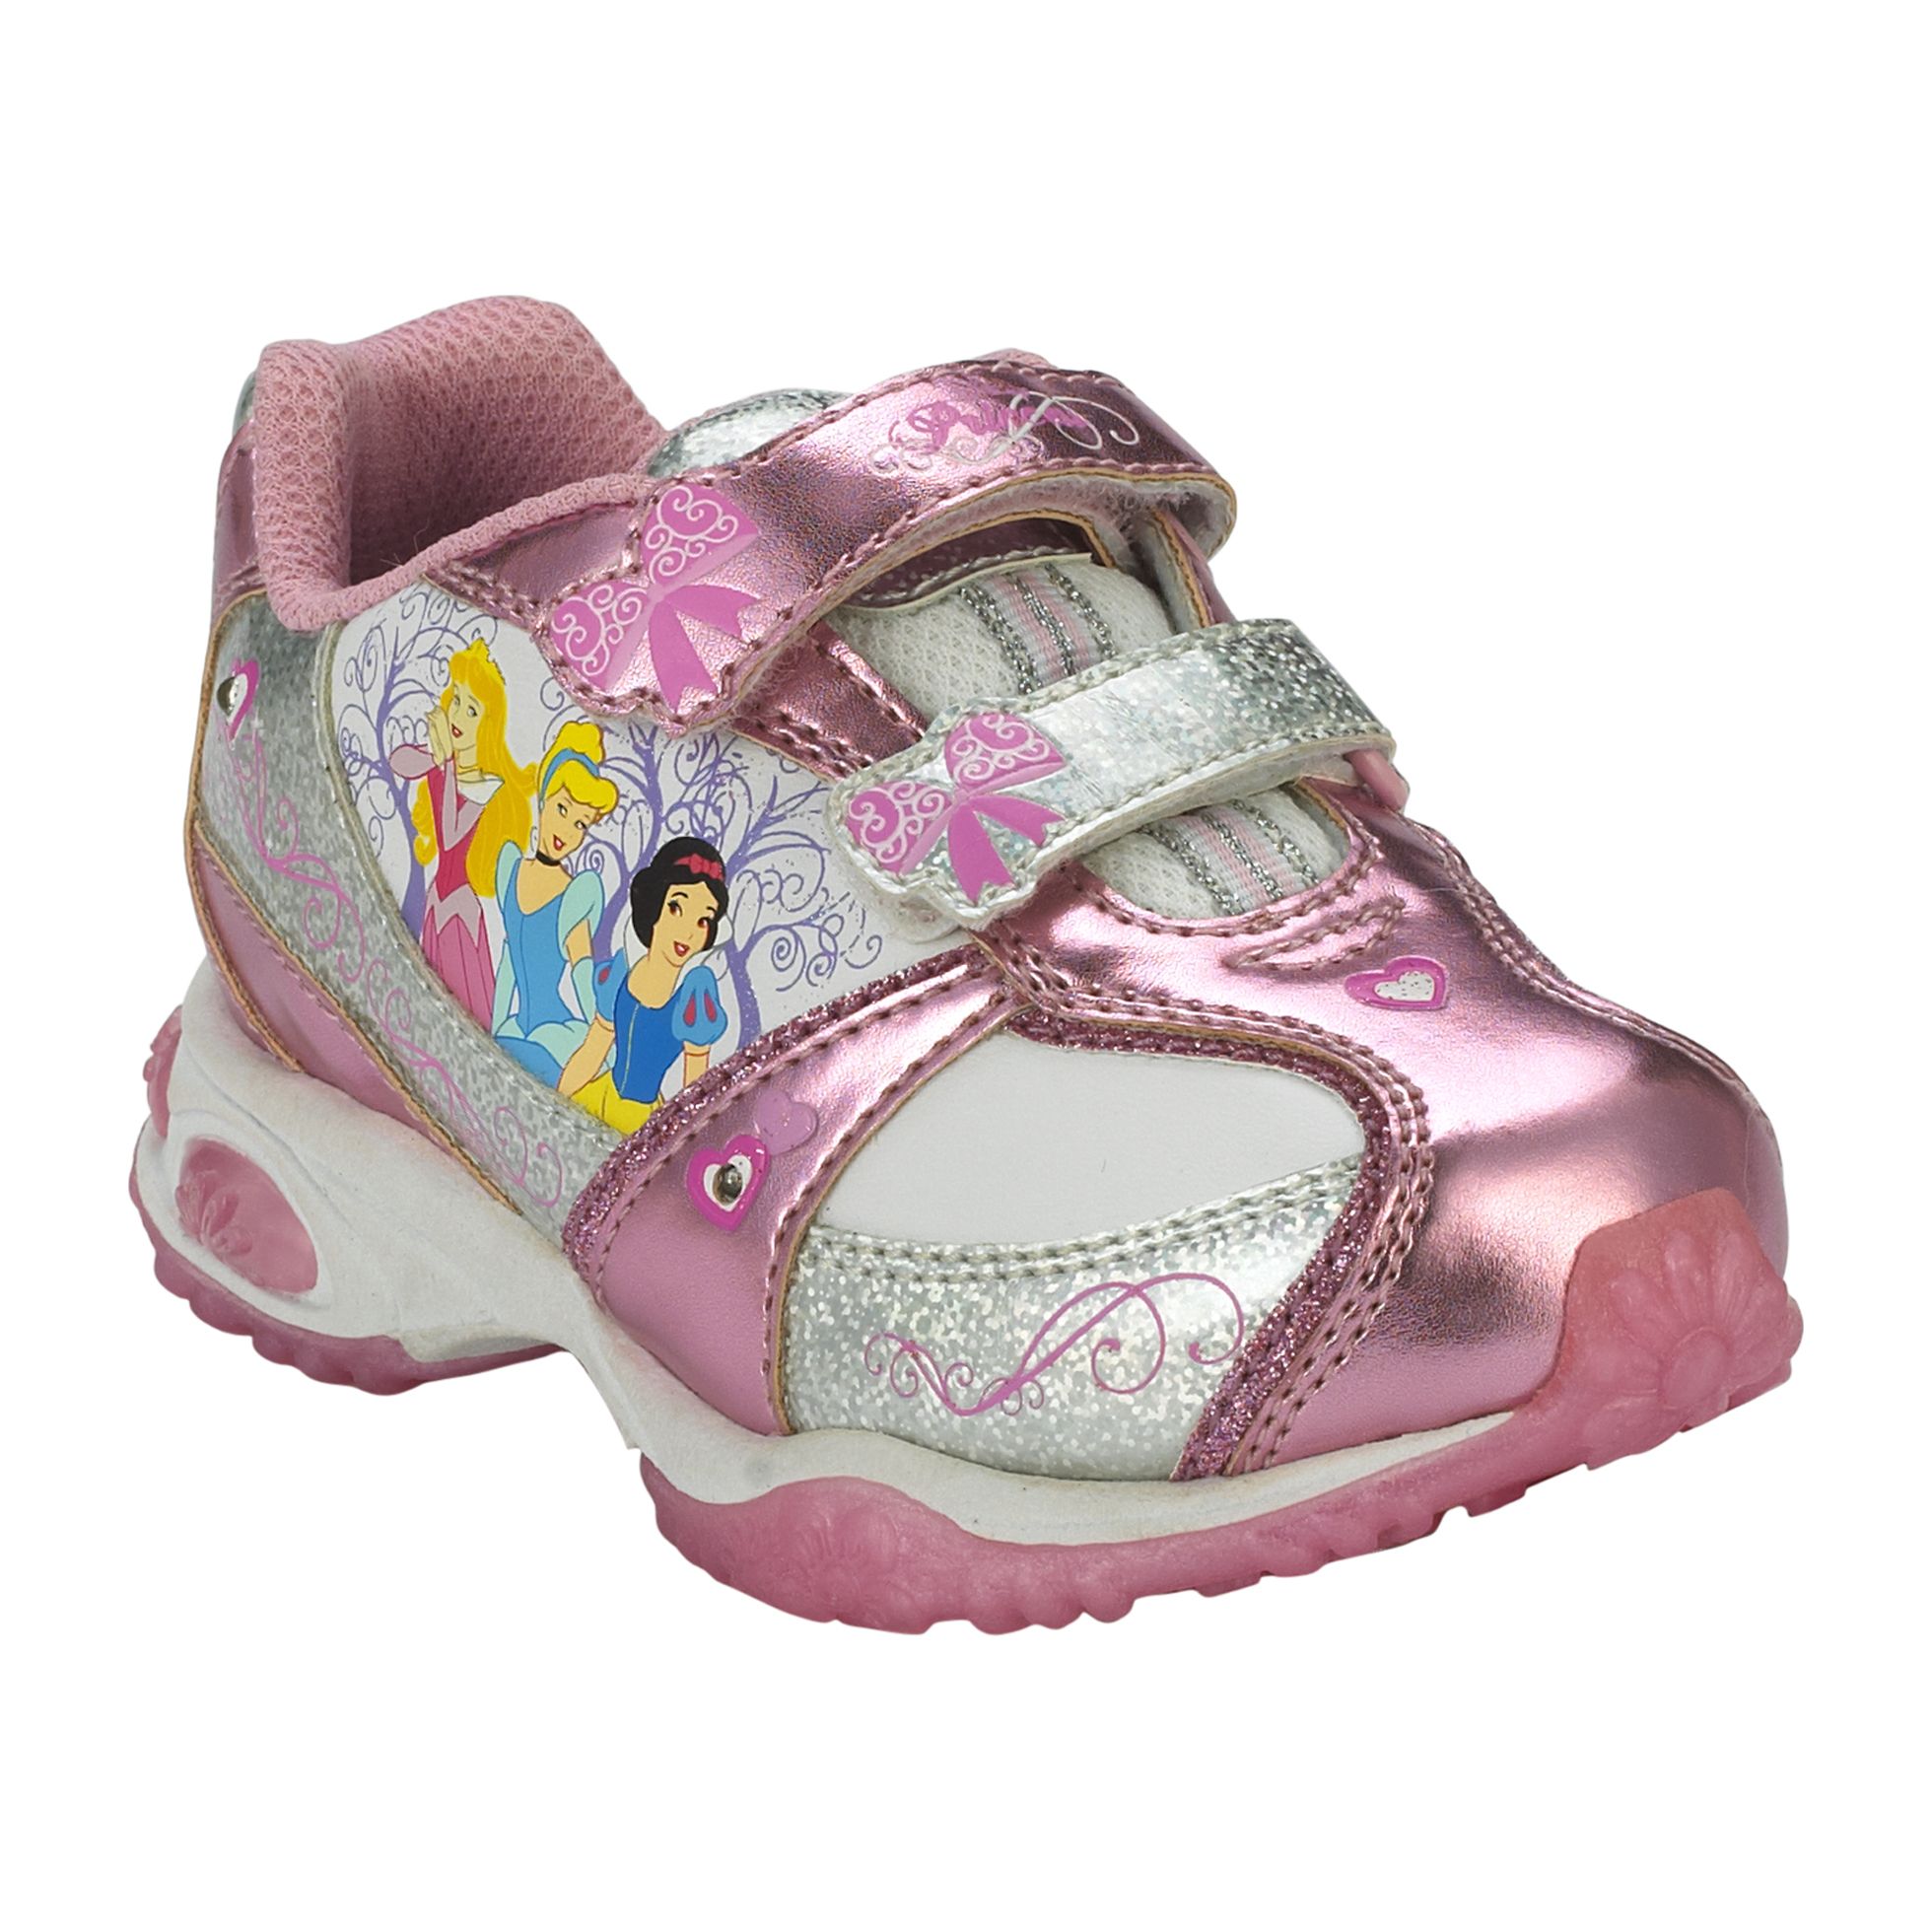 Disney Toddler Girl's Princess - Pink